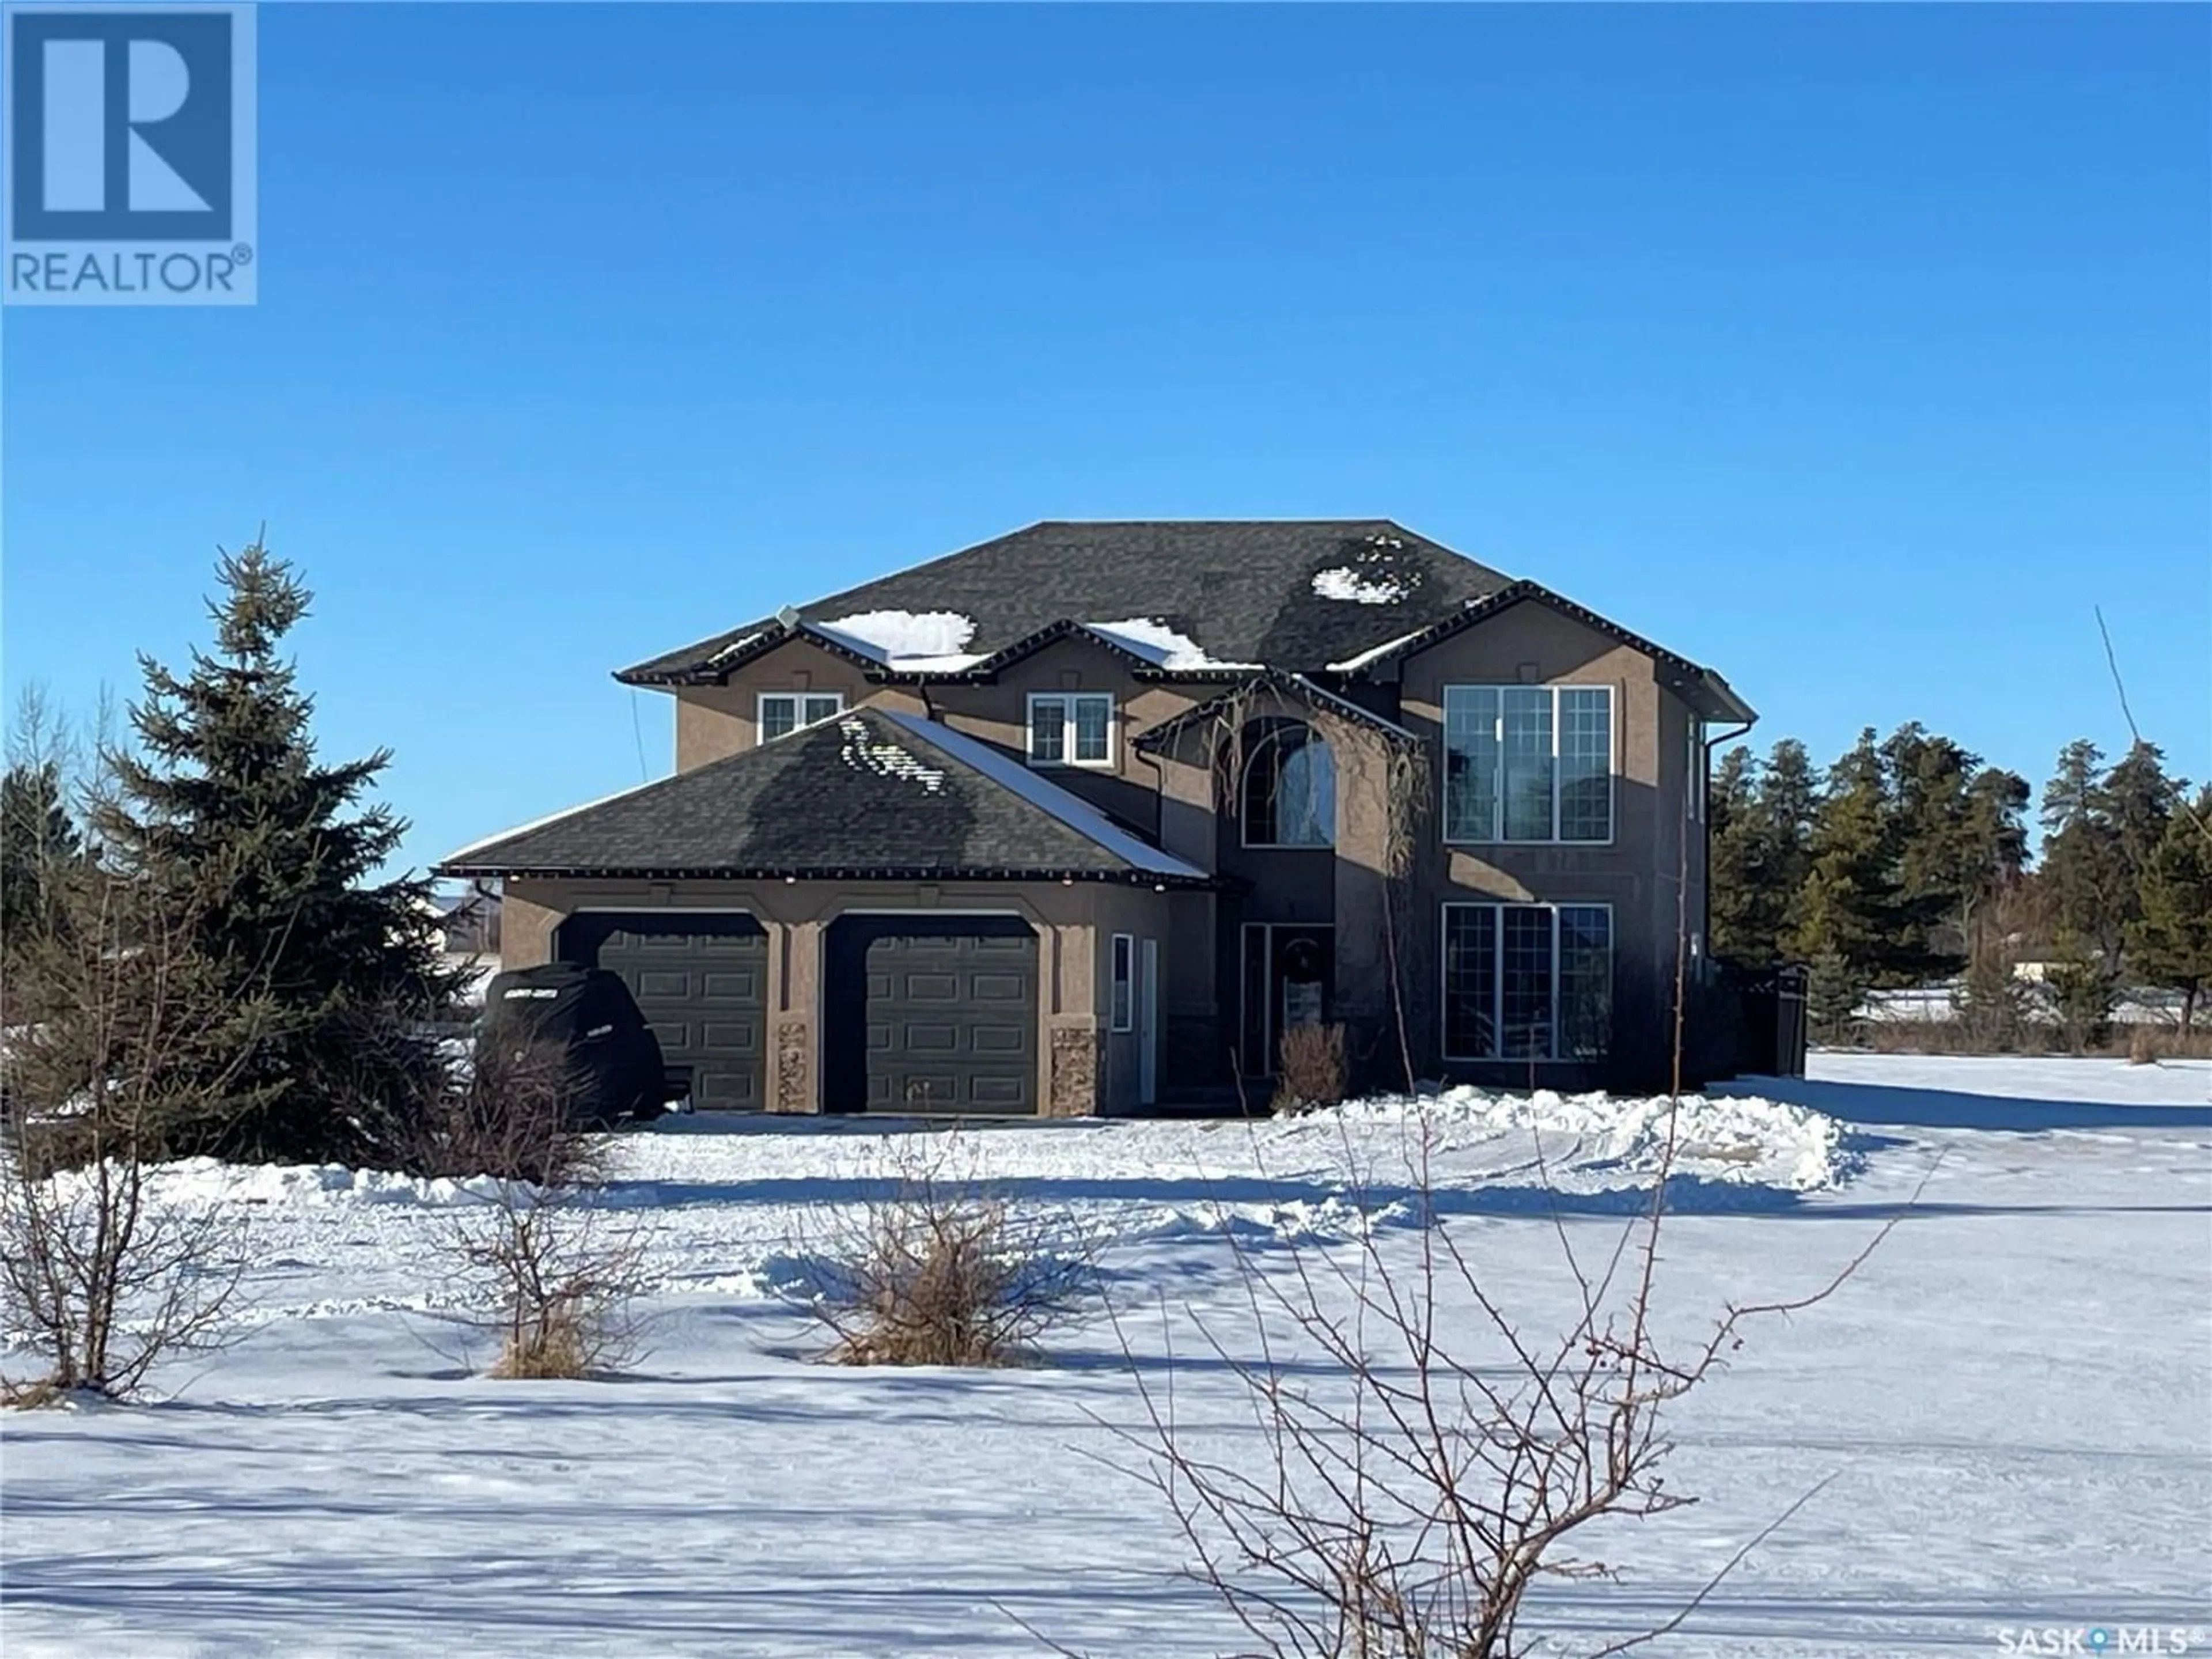 Home with stucco exterior material for 211 Lakeridge Estates, Buckland Rm No. 491 Saskatchewan S6V5R3